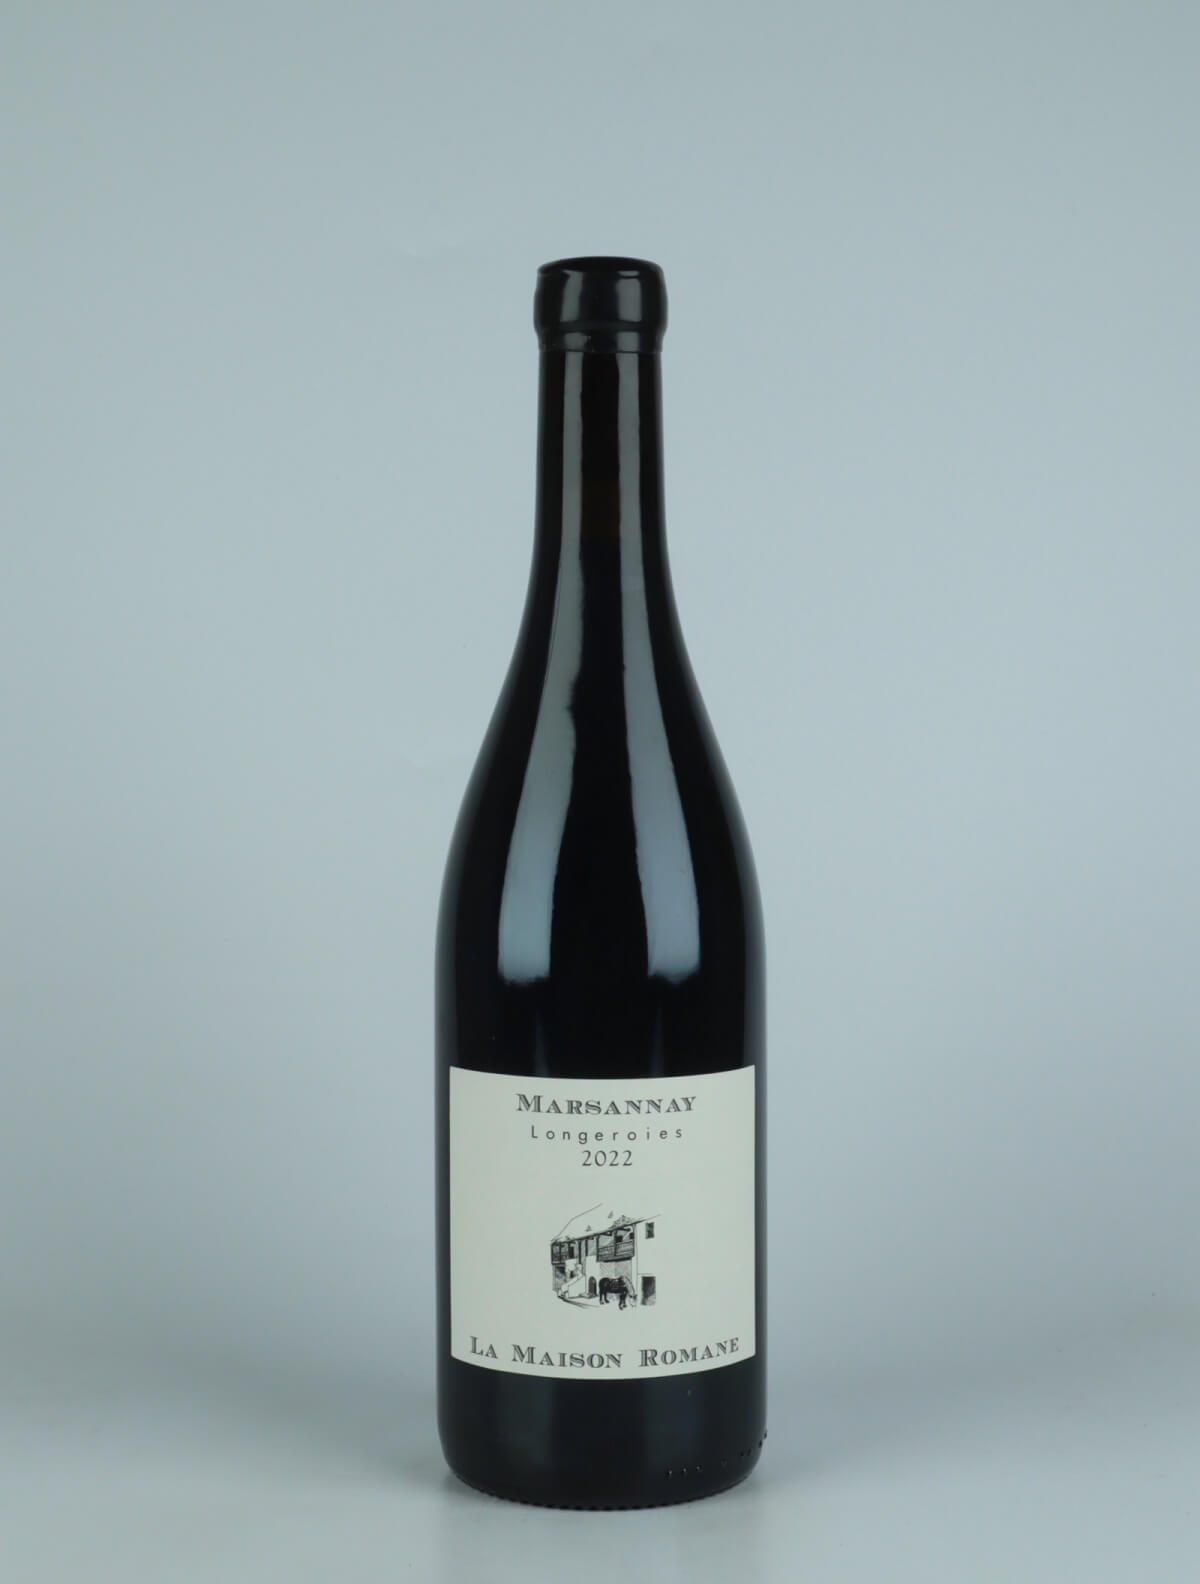 A bottle 2022 Marsannay - Longeroies Red wine from La Maison Romane, Burgundy in France